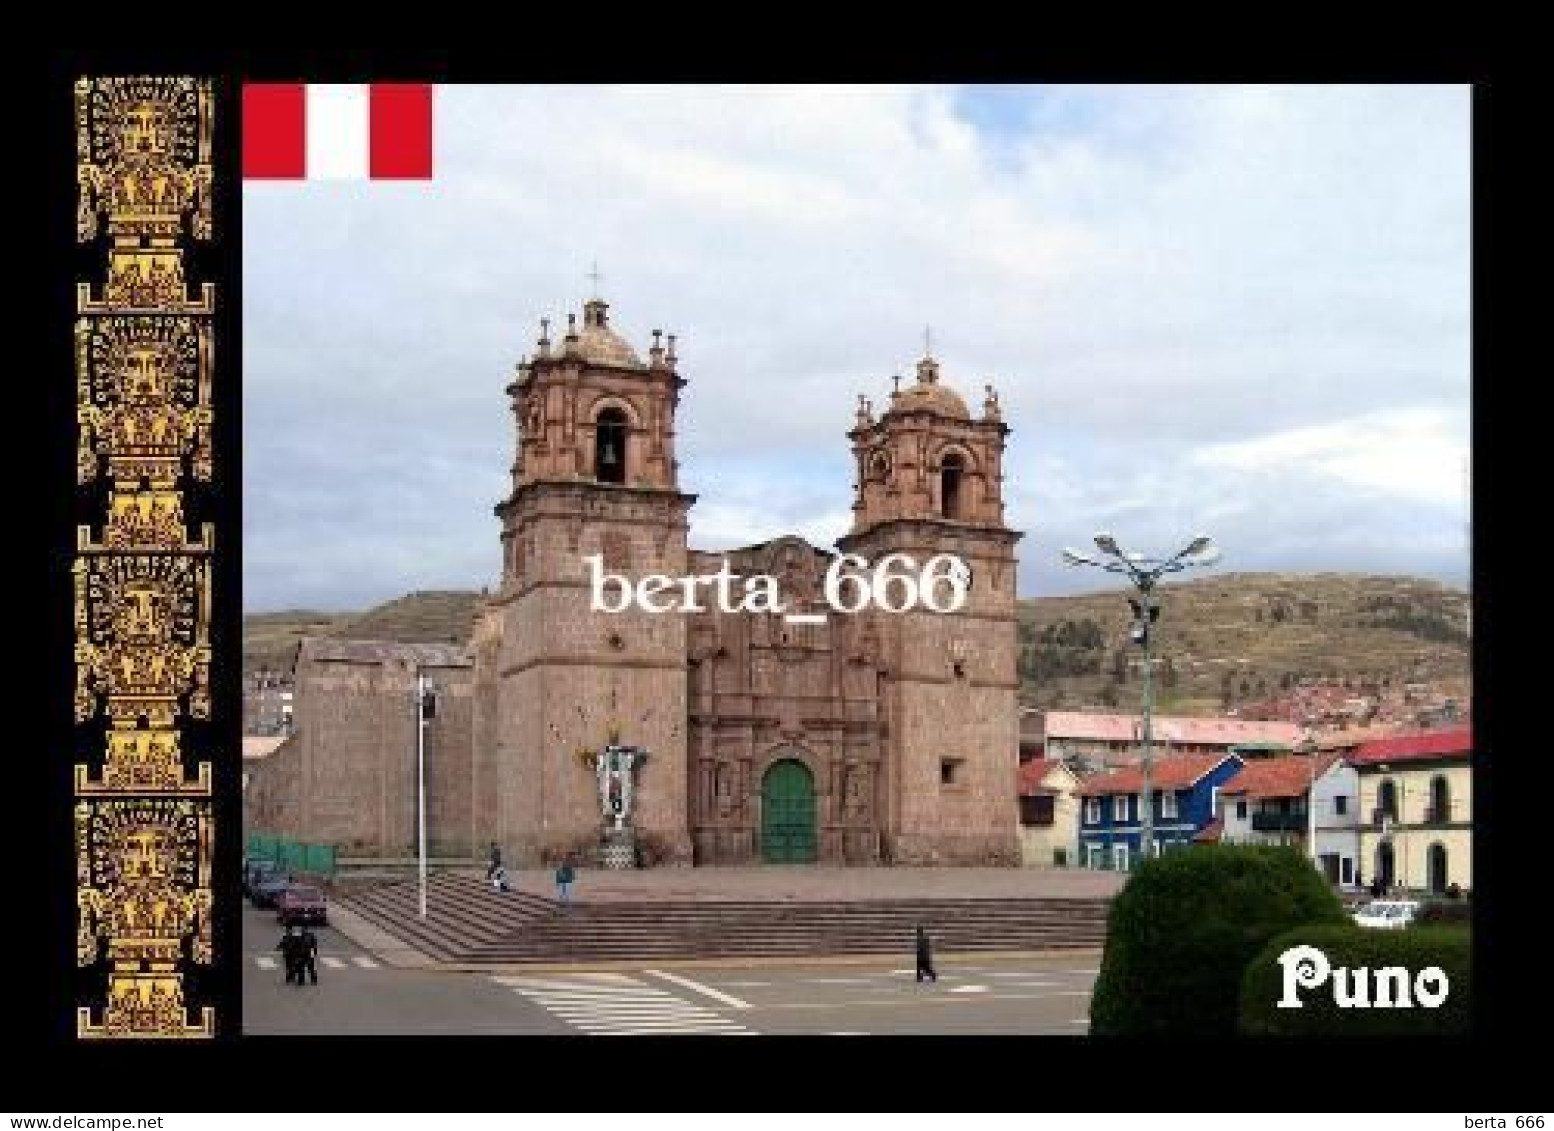 Peru Puno Cathedral New Postcard - Peru